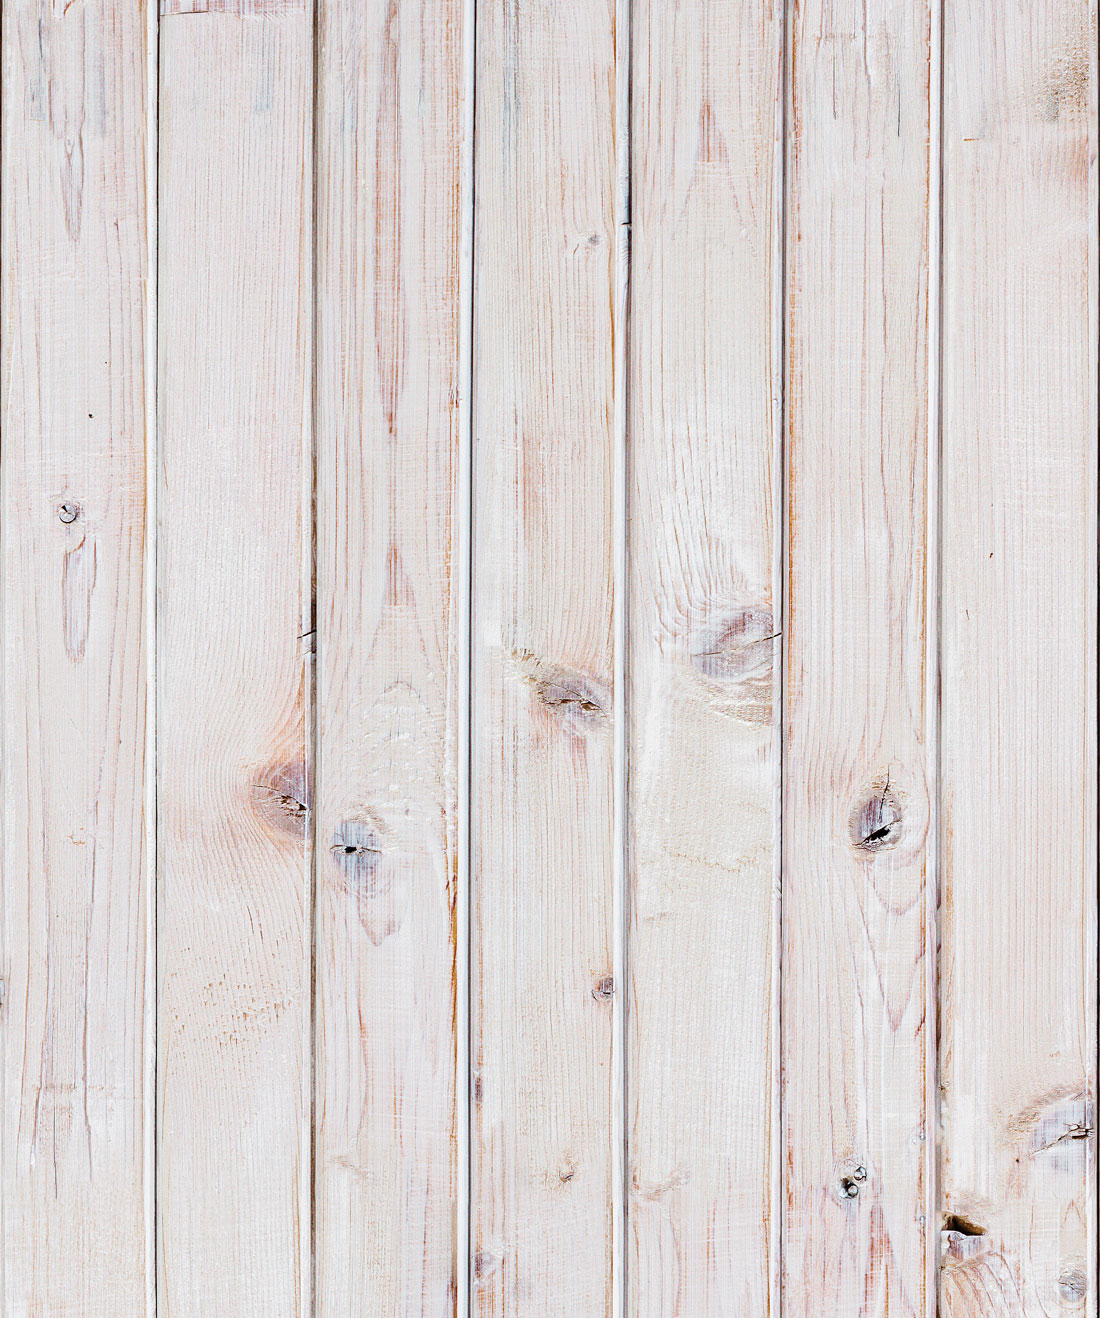 Giấy dán tường Newport Bleached White Wood Effect là sản phẩm đậm chất cổ điển của Milton & King, thương hiệu giấy dán tường đẳng cấp của Anh Quốc. Với họa tiết gỗ trắng hiện đại, giấy dán tường Newport Bleached White Wood Effect tạo nên vẻ đẹp sang trọng và thanh lịch cho không gian sống của bạn. Khám phá ngay và làm mới lại tổ ấm của bạn với sản phẩm giấy dán tường này.